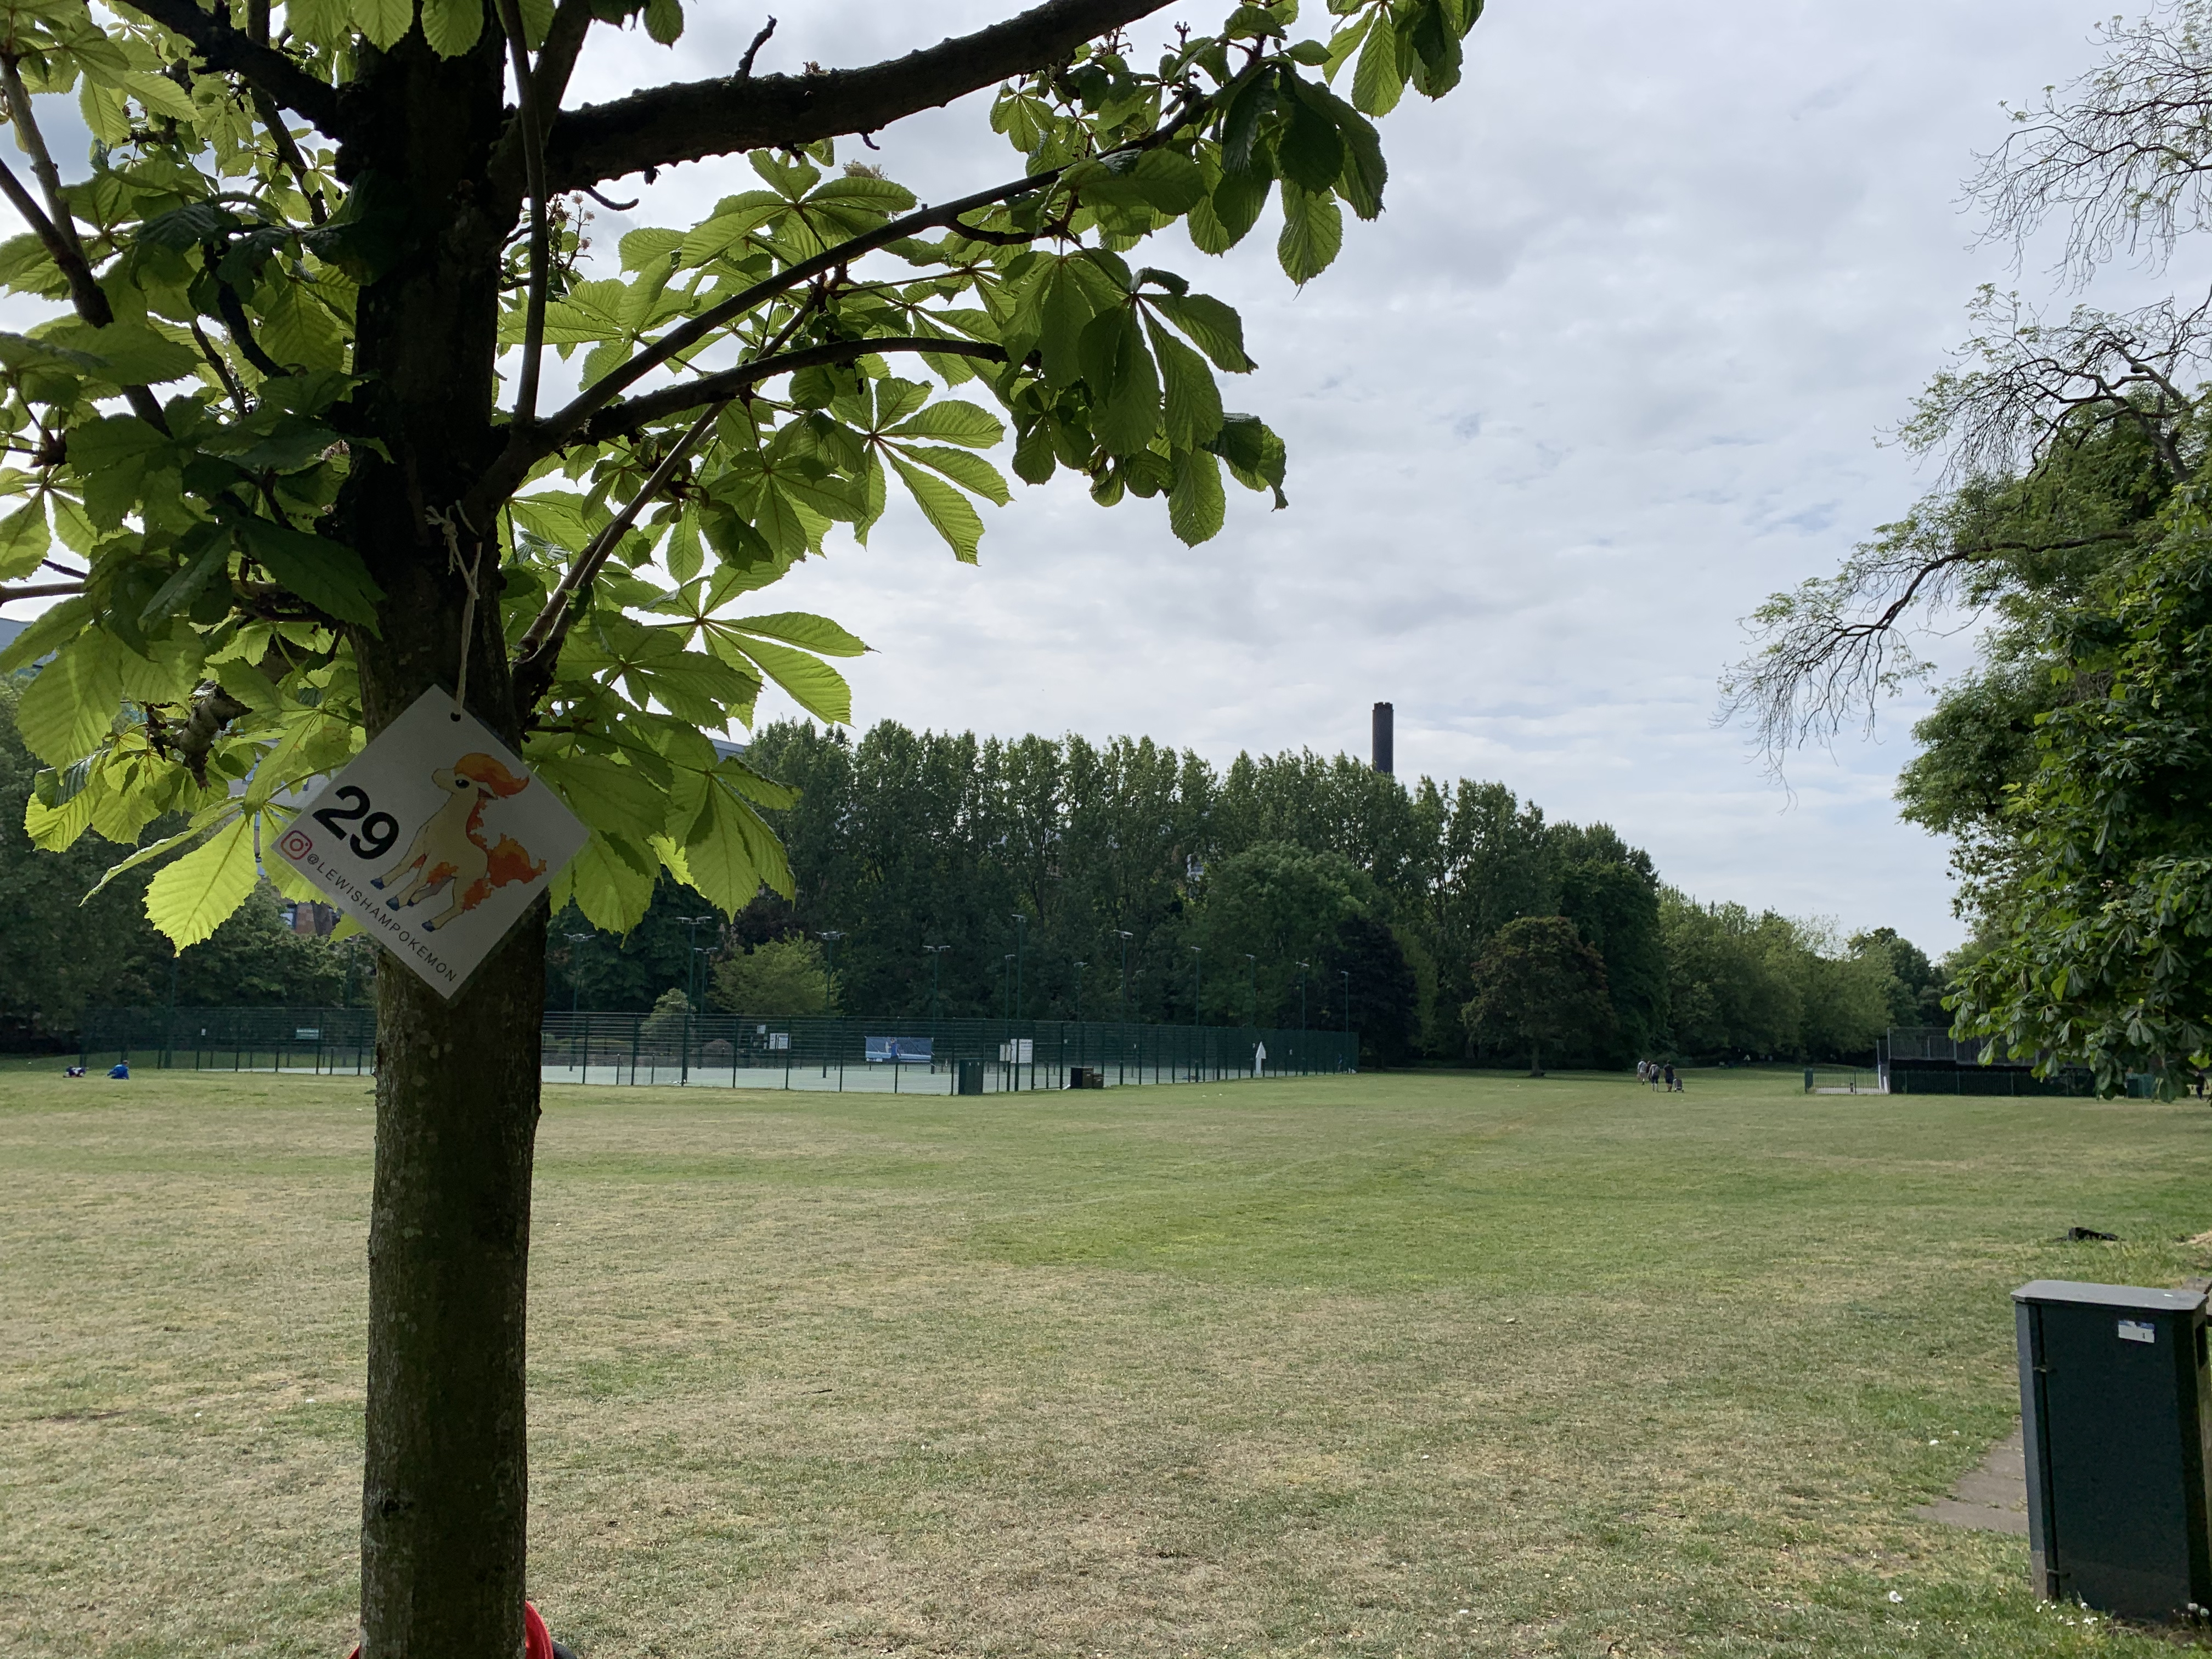 Pokemon hidden in parks around Lewisham